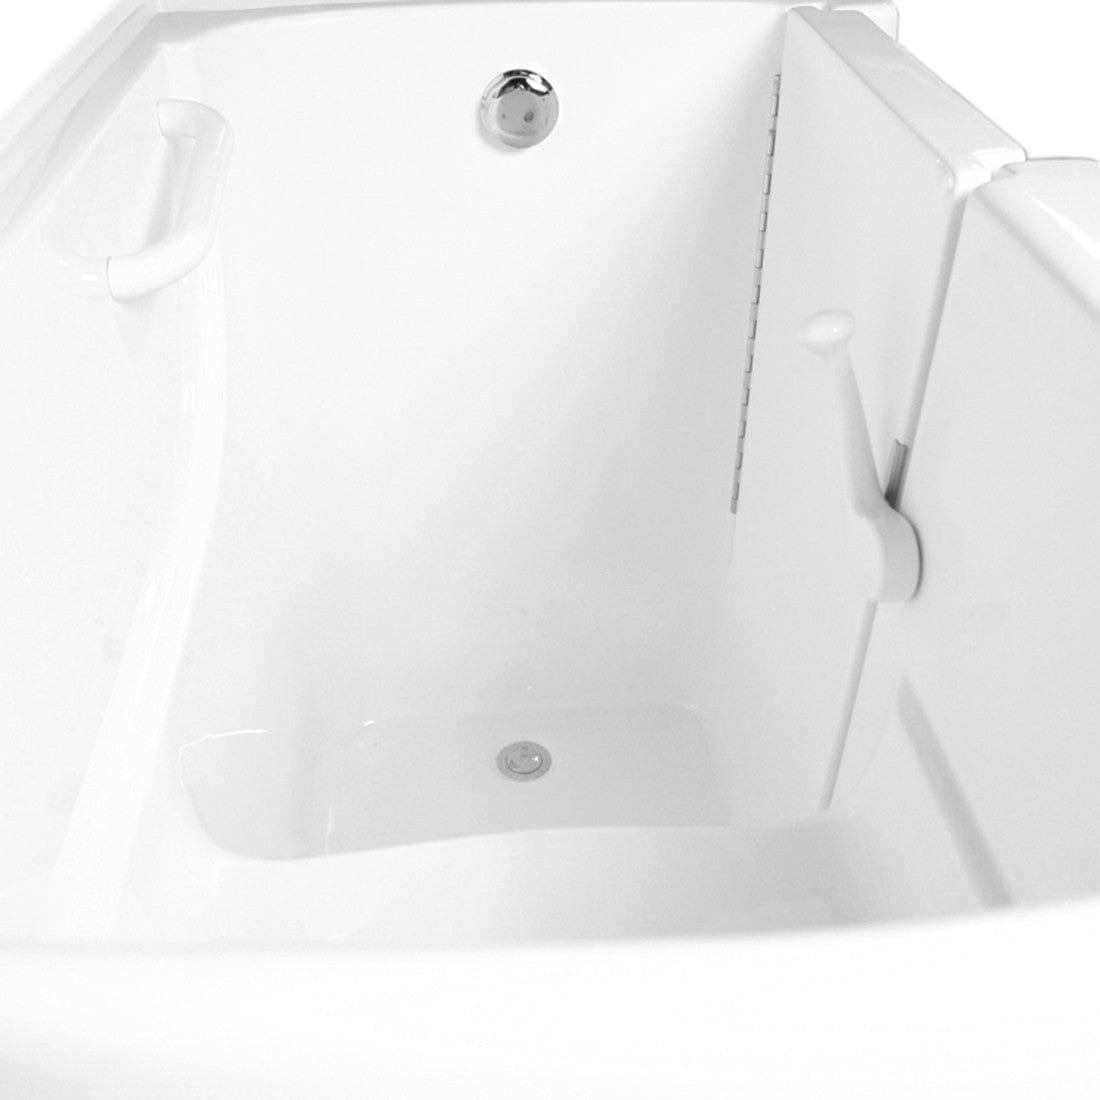 Ariel EZWT-3054 Dual Series Walk-In Tub | EZWT-3054-DUAL-R